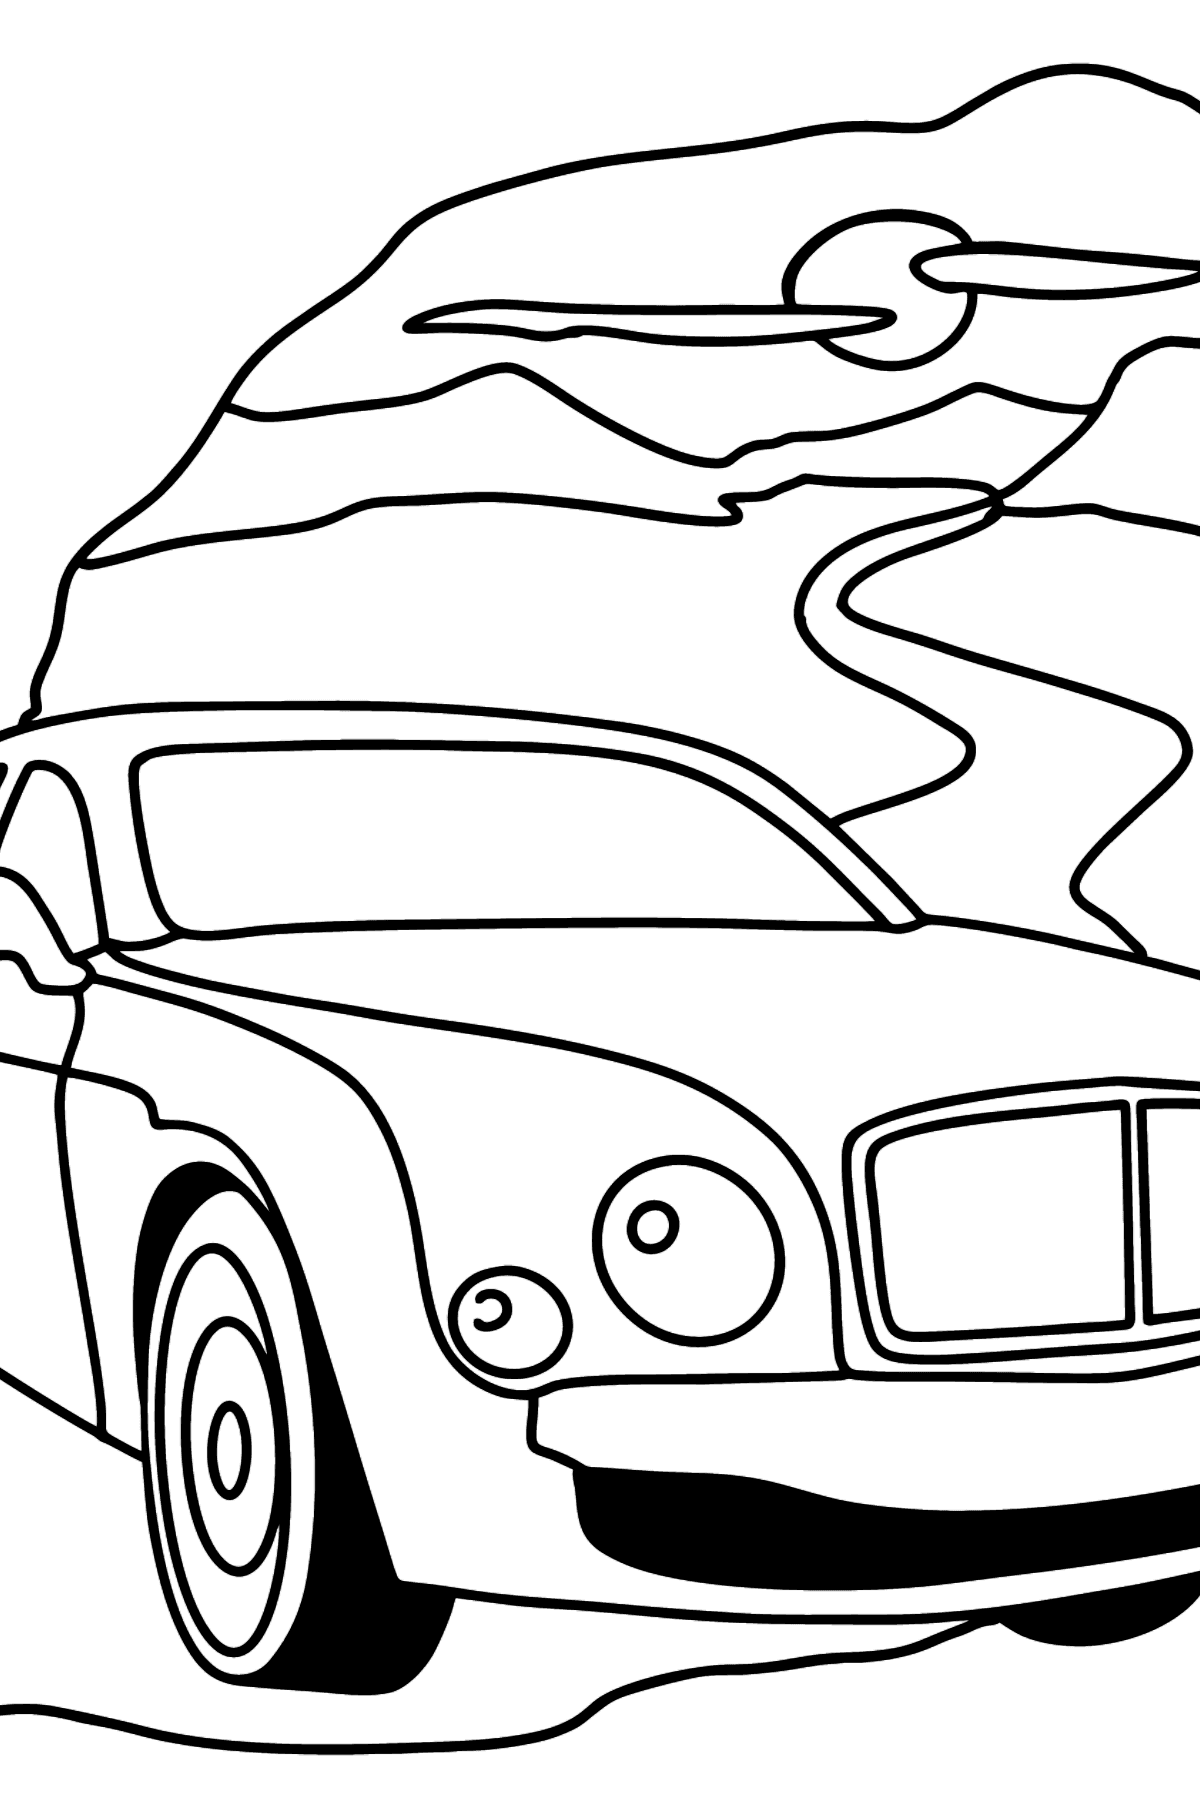 Kleurplaat Bentley Mulsanne auto - kleurplaten voor kinderen